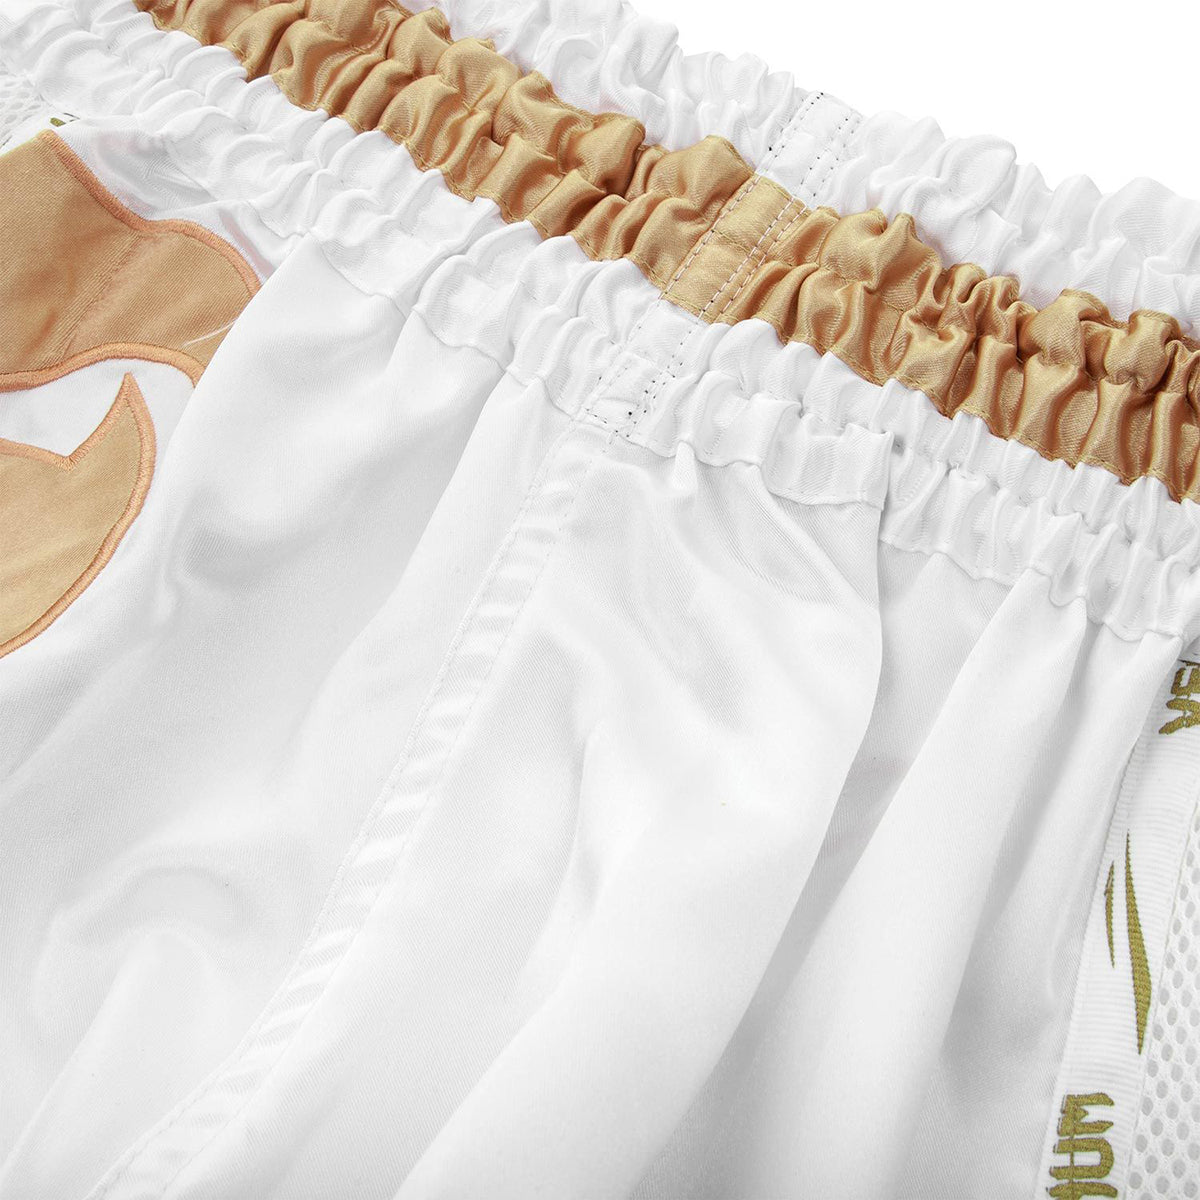 Venum Giant Muay Thai Shorts - White/Gold Venum